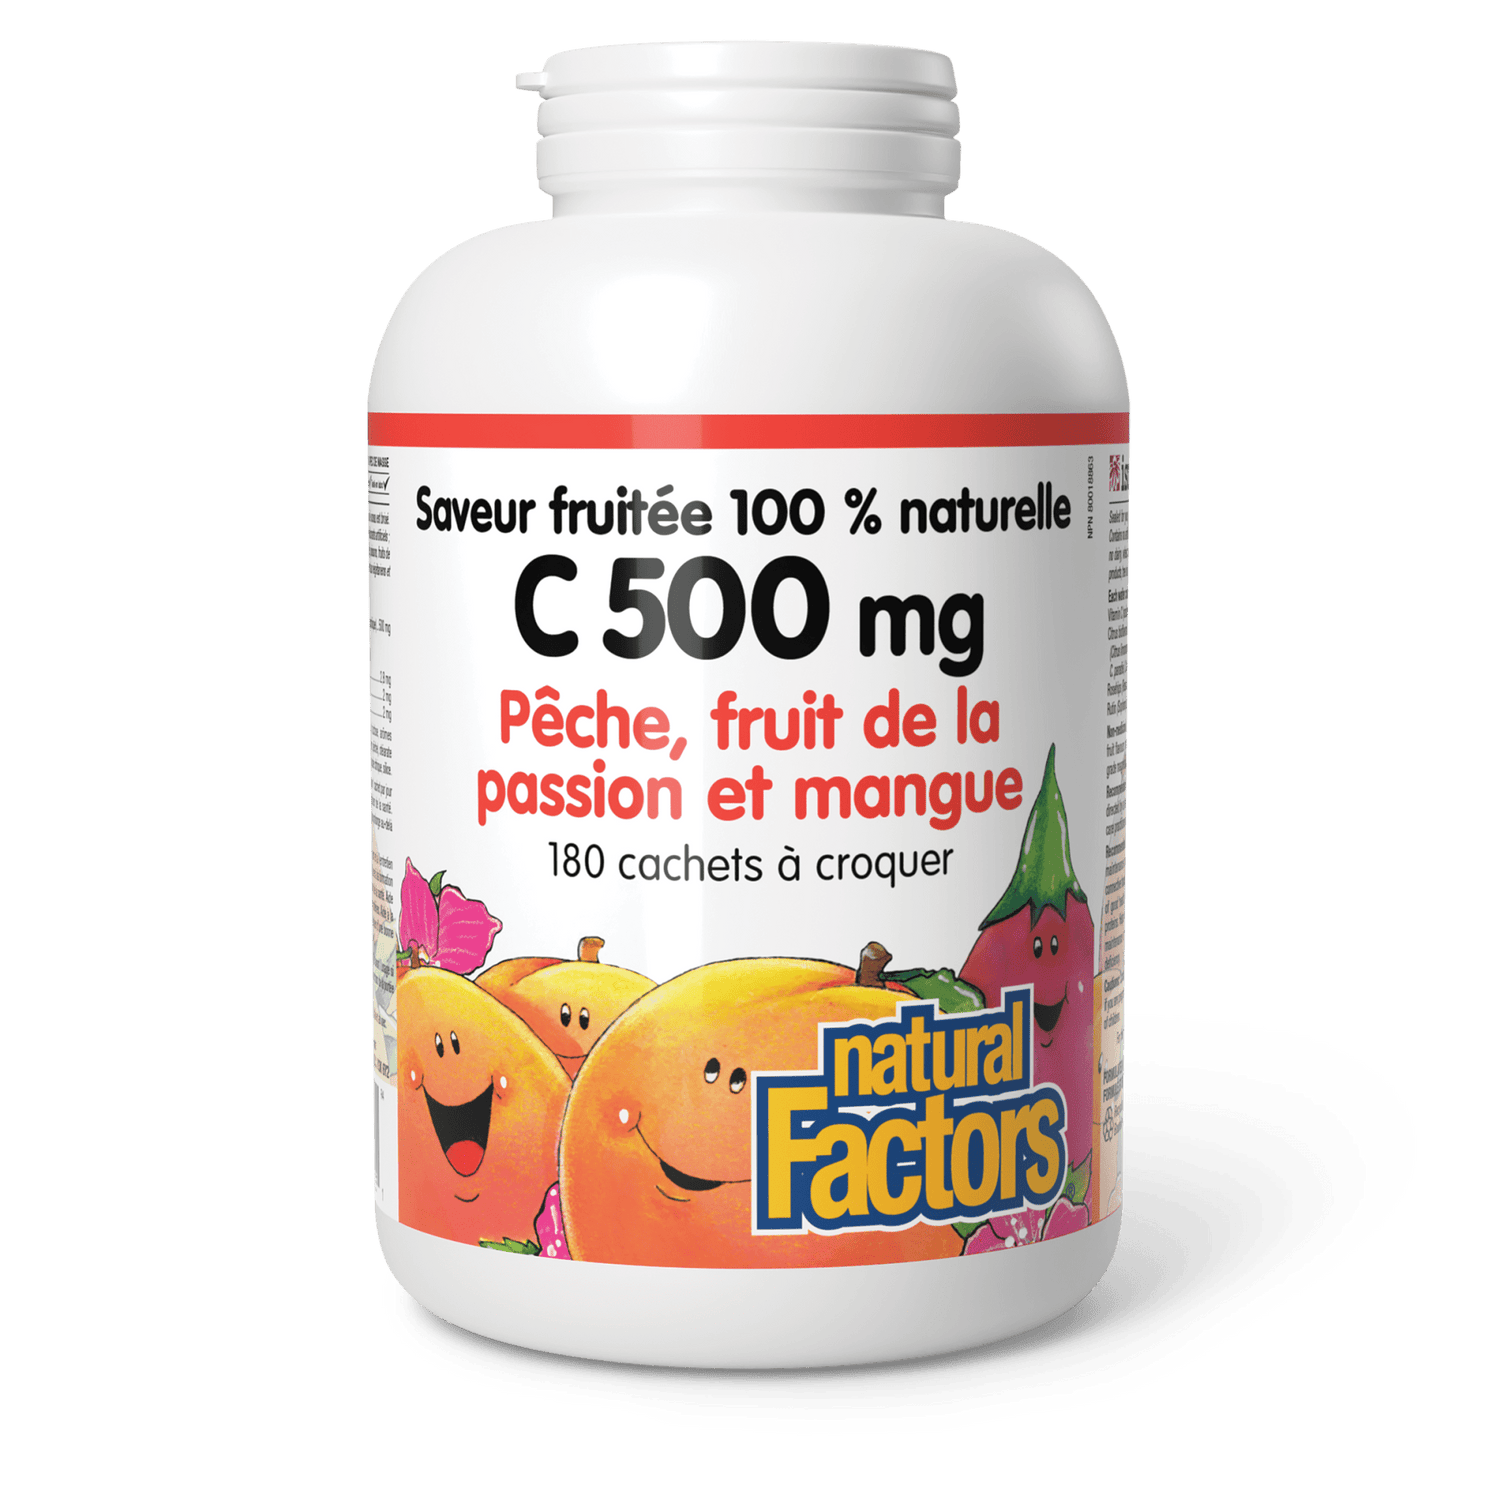 C 500 mg saveur fruitée 100 % naturelle, pêche, fruit de la passion et mangue, Natural Factors|v|image|1325